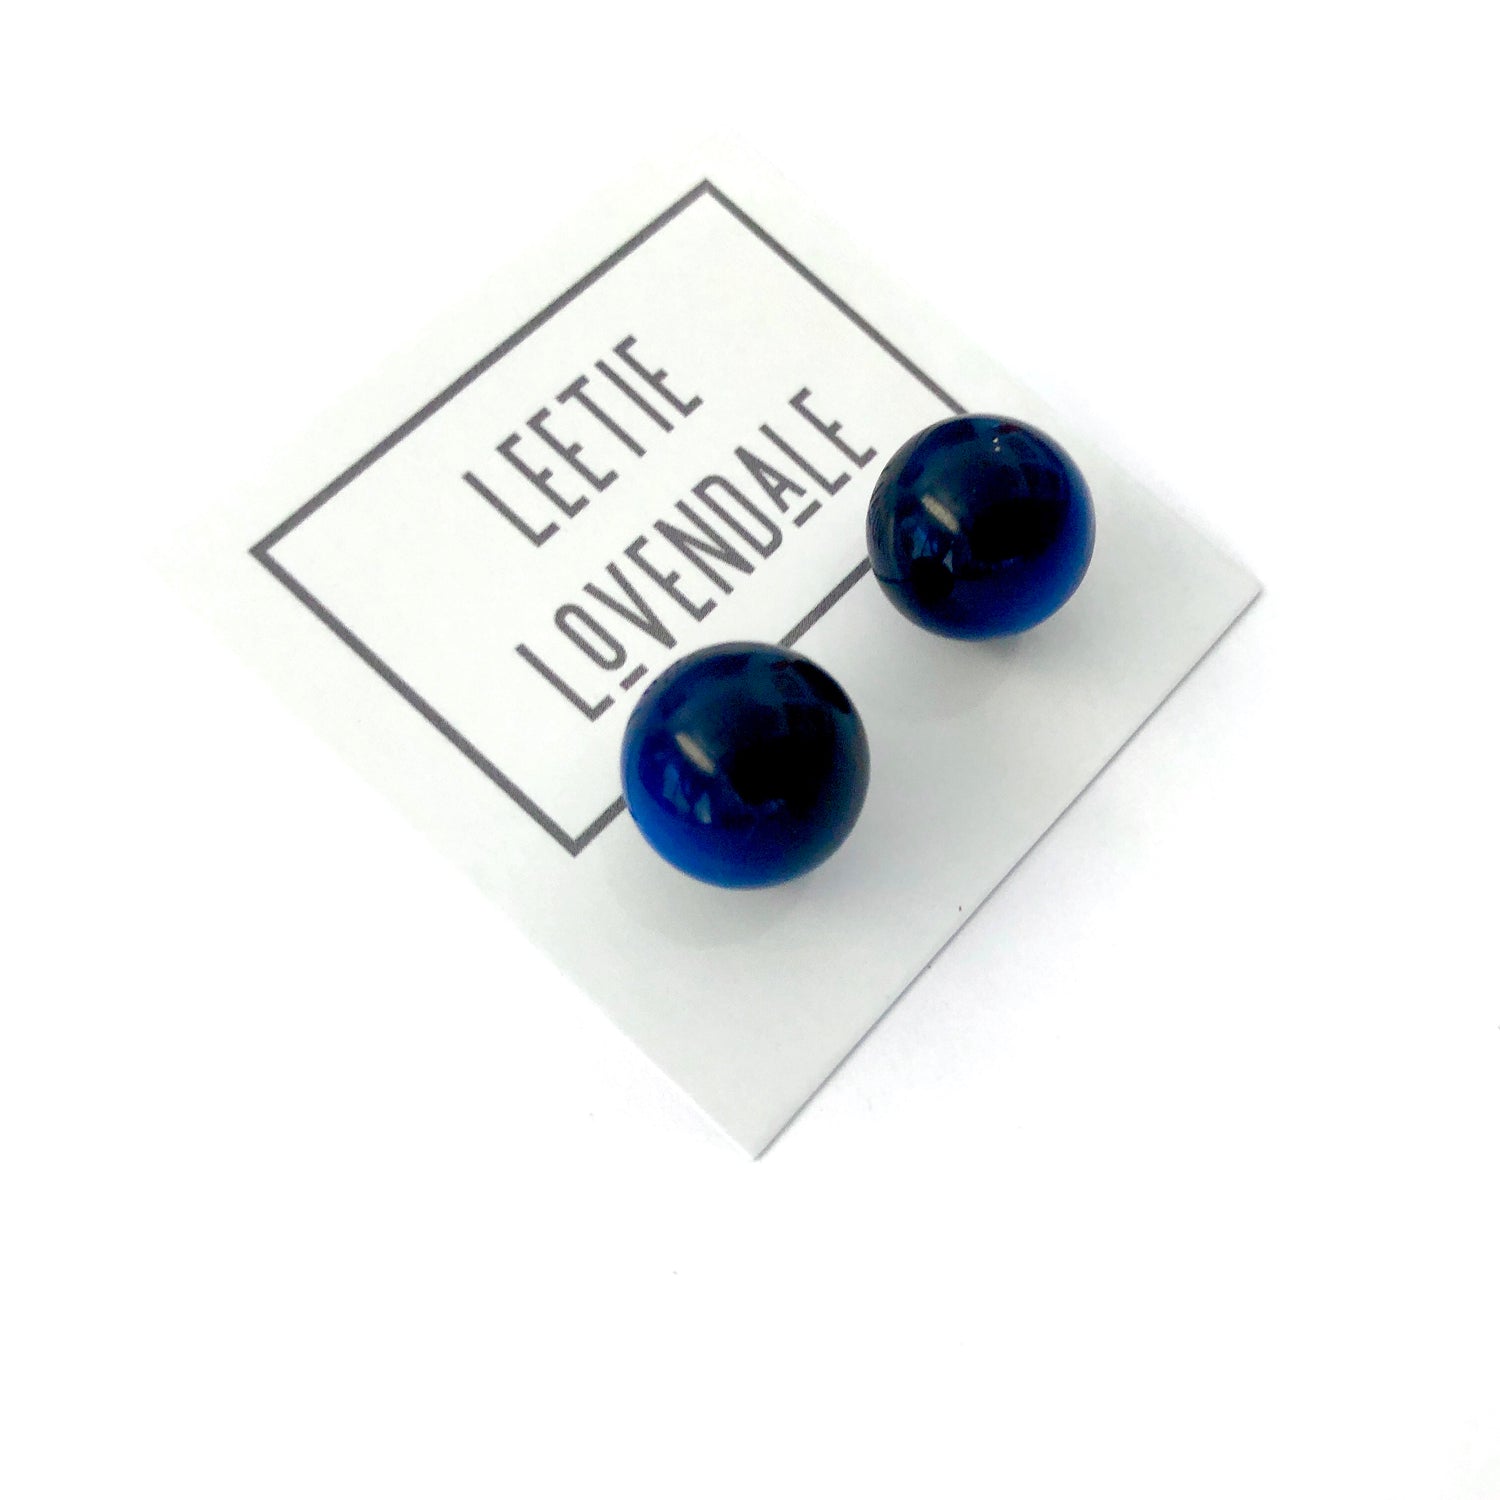 navy blue earrings